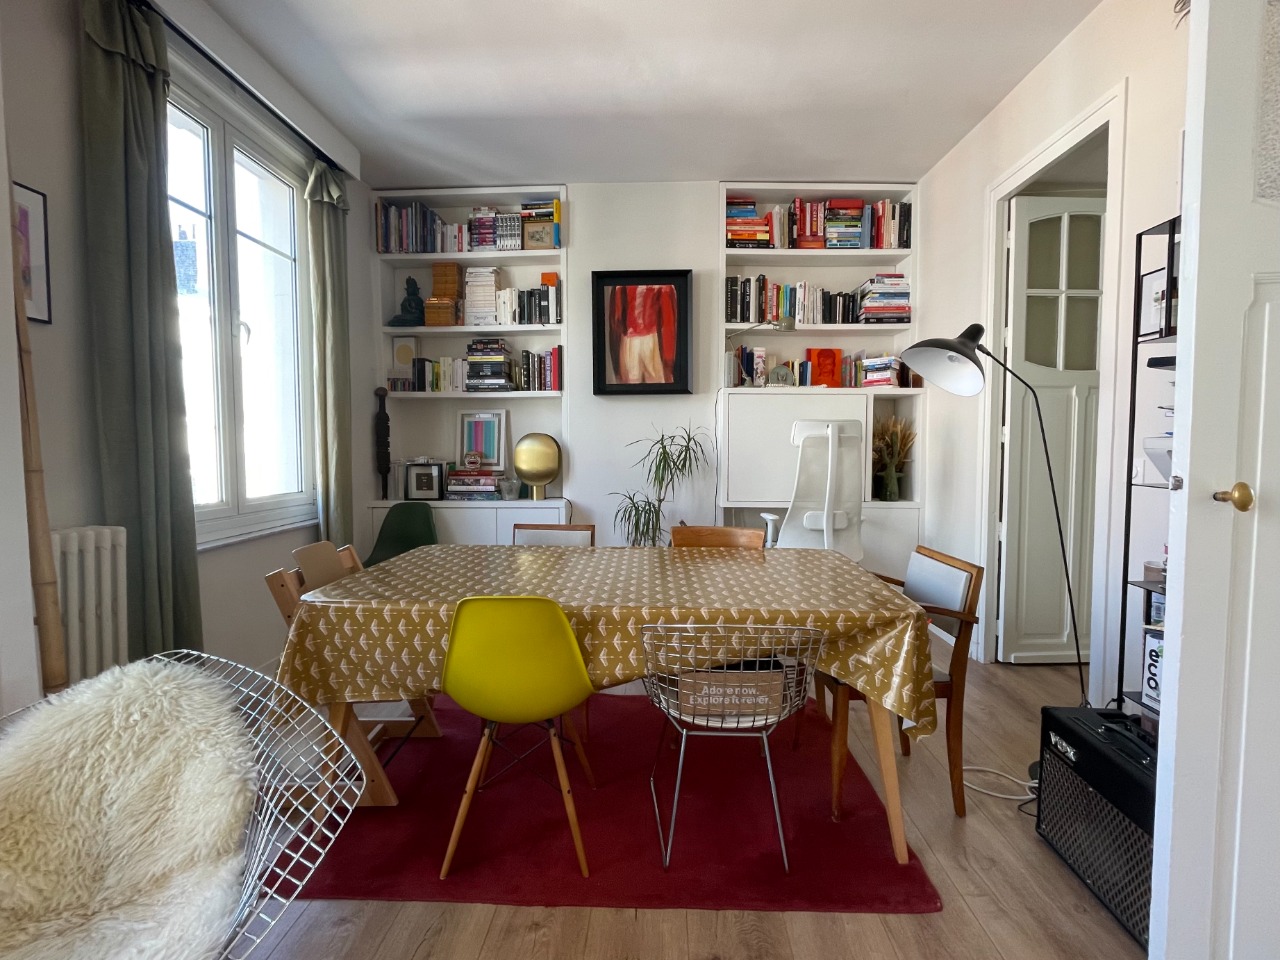 Appartement 3 pieces 80m2 proximite rihour Photo 5 - Paris Lille Immobilier